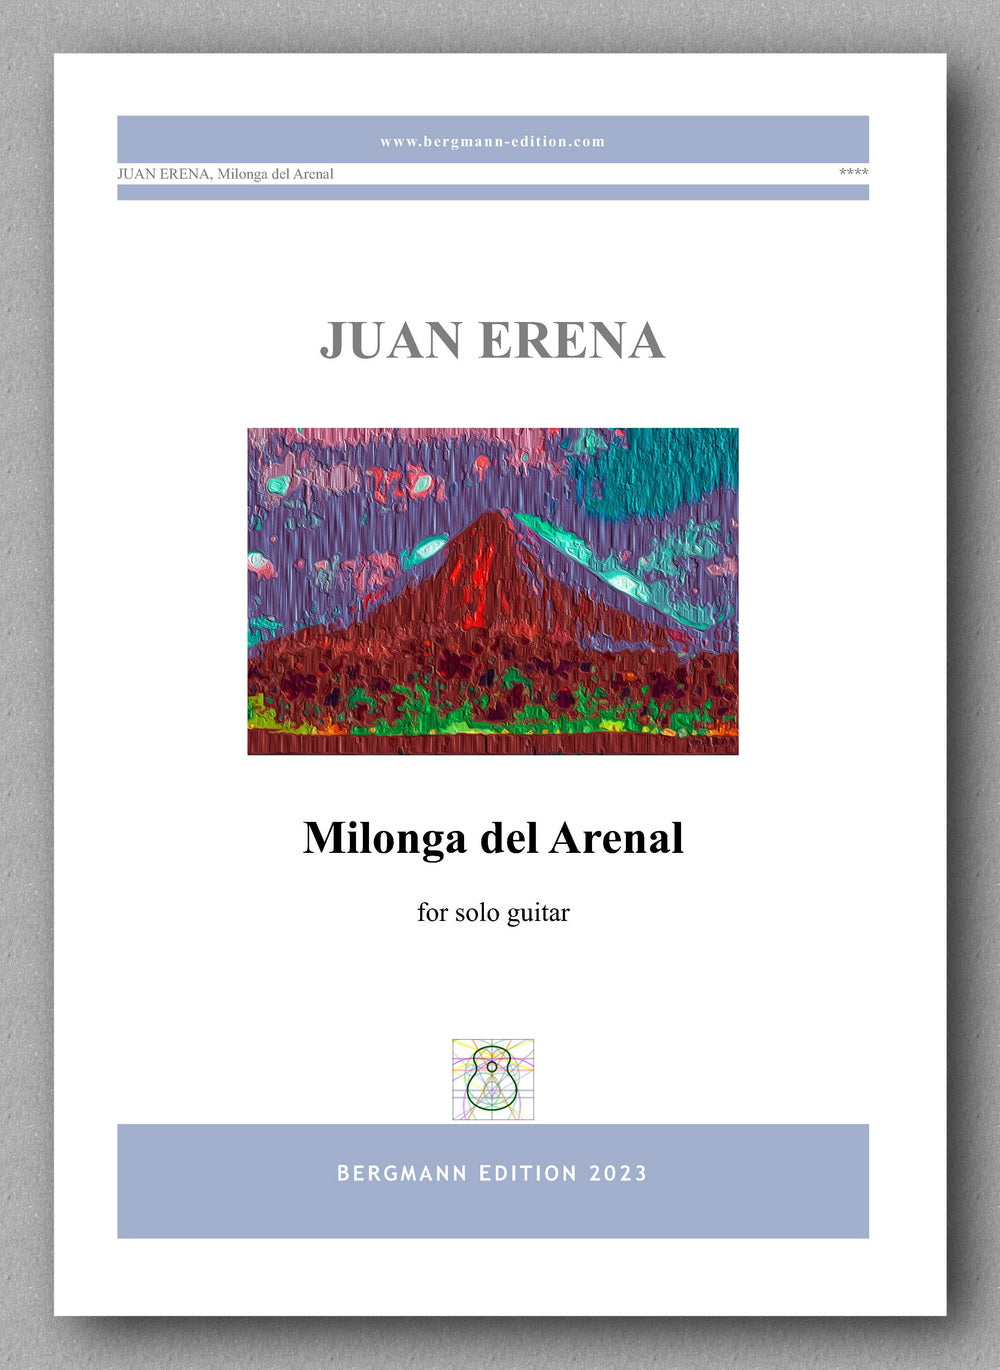 Juan Erena, Milonga del Arenal - preview of the cover